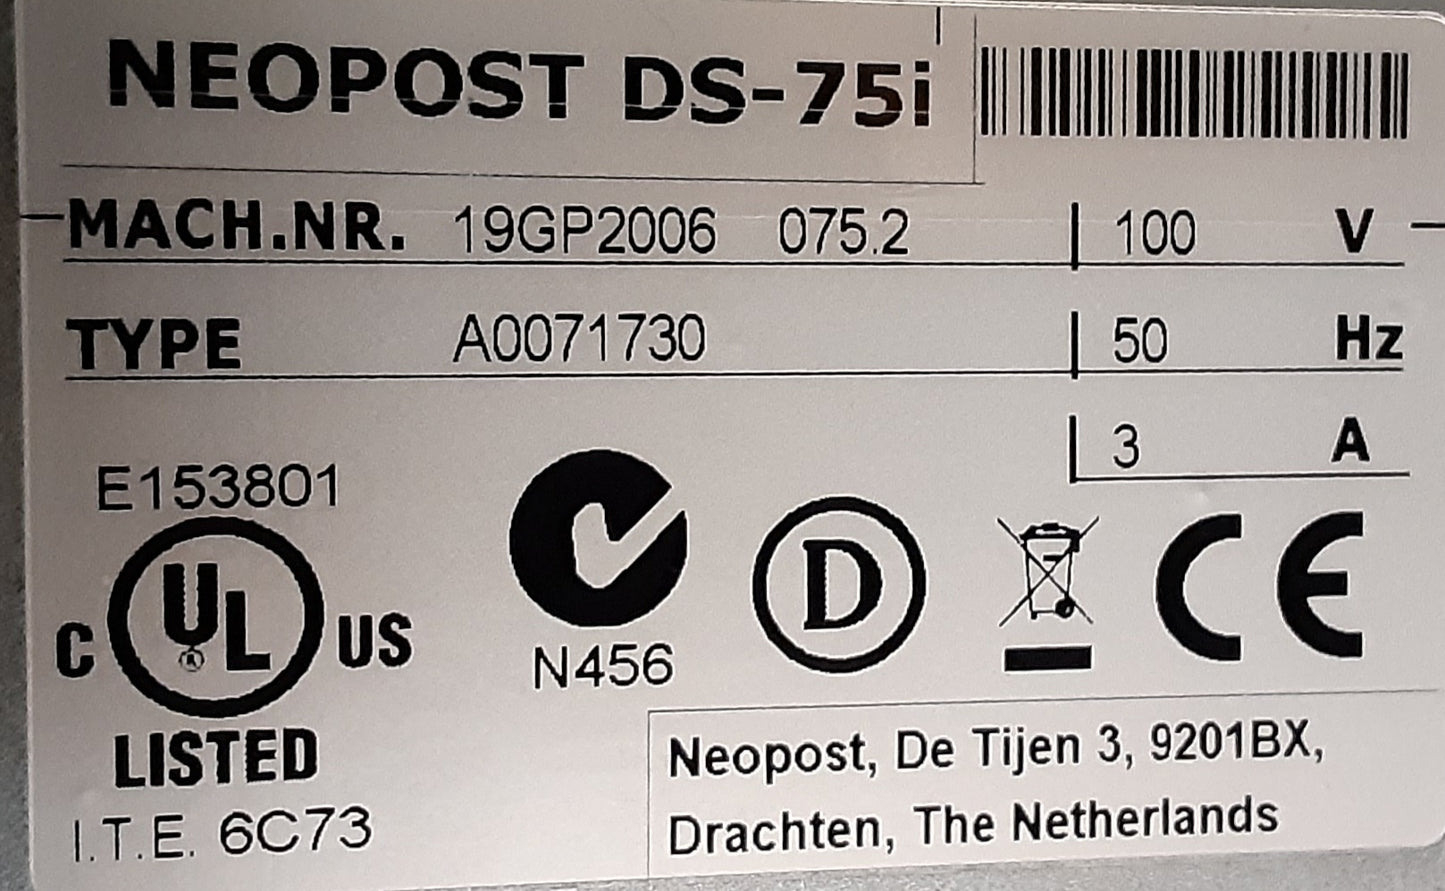 ネオポスト製 DS-75i 封入封かん機 中規模オフィス向け 50Hz仕様 quadient1-ds75i-2002